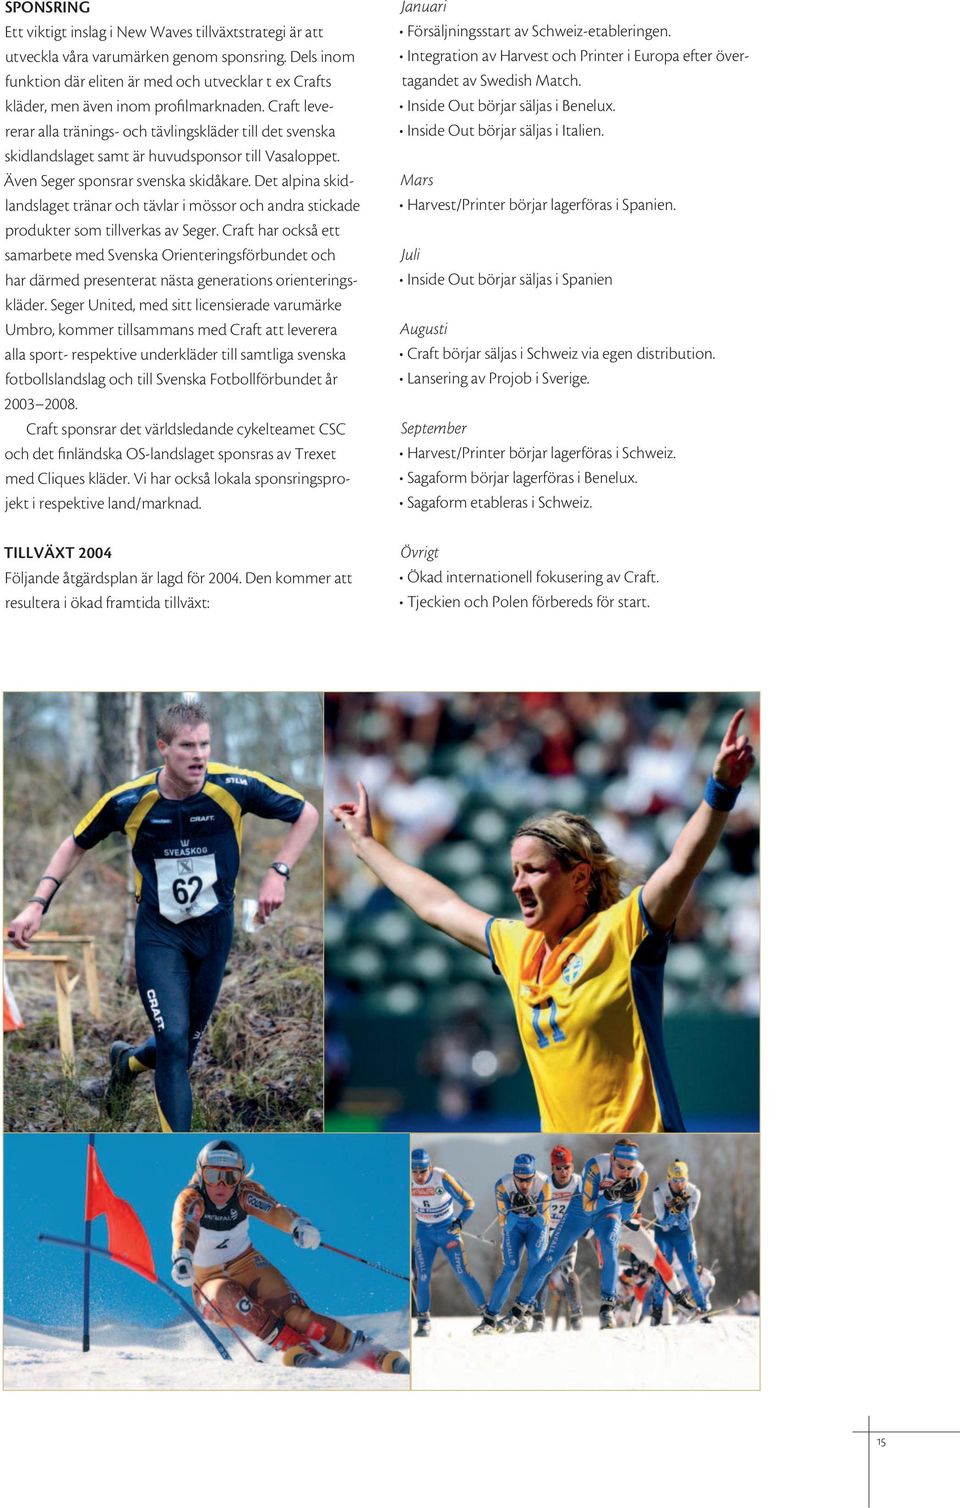 Craft levererar alla tränings- och tävlingskläder till det svenska skidlandslaget samt är huvudsponsor till Vasaloppet. Även Seger sponsrar svenska skidåkare.